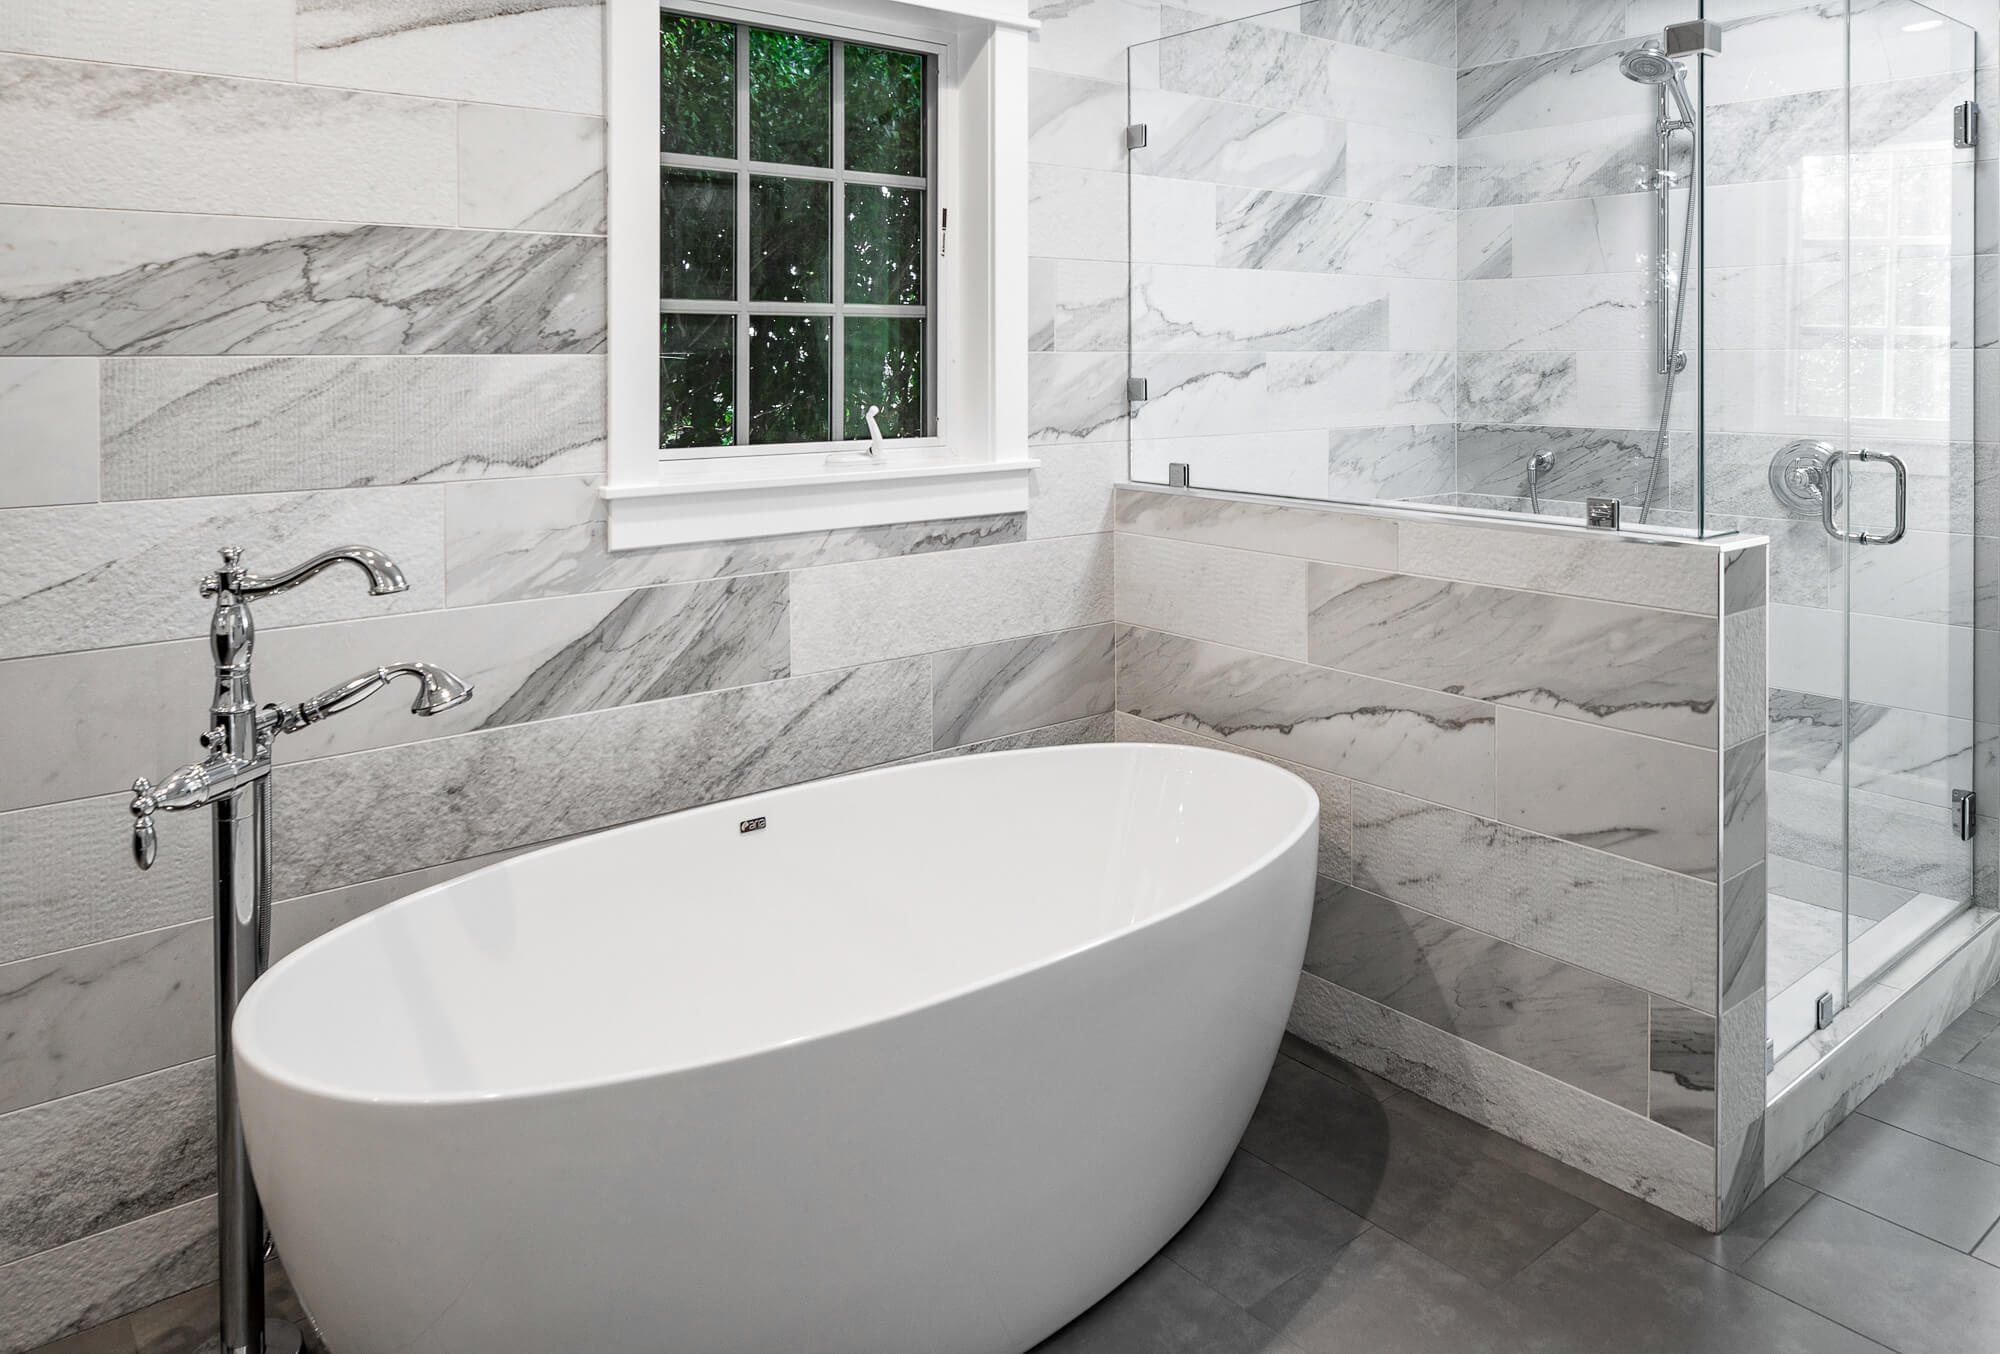 Master Bath Toilet Partition Design Ideas